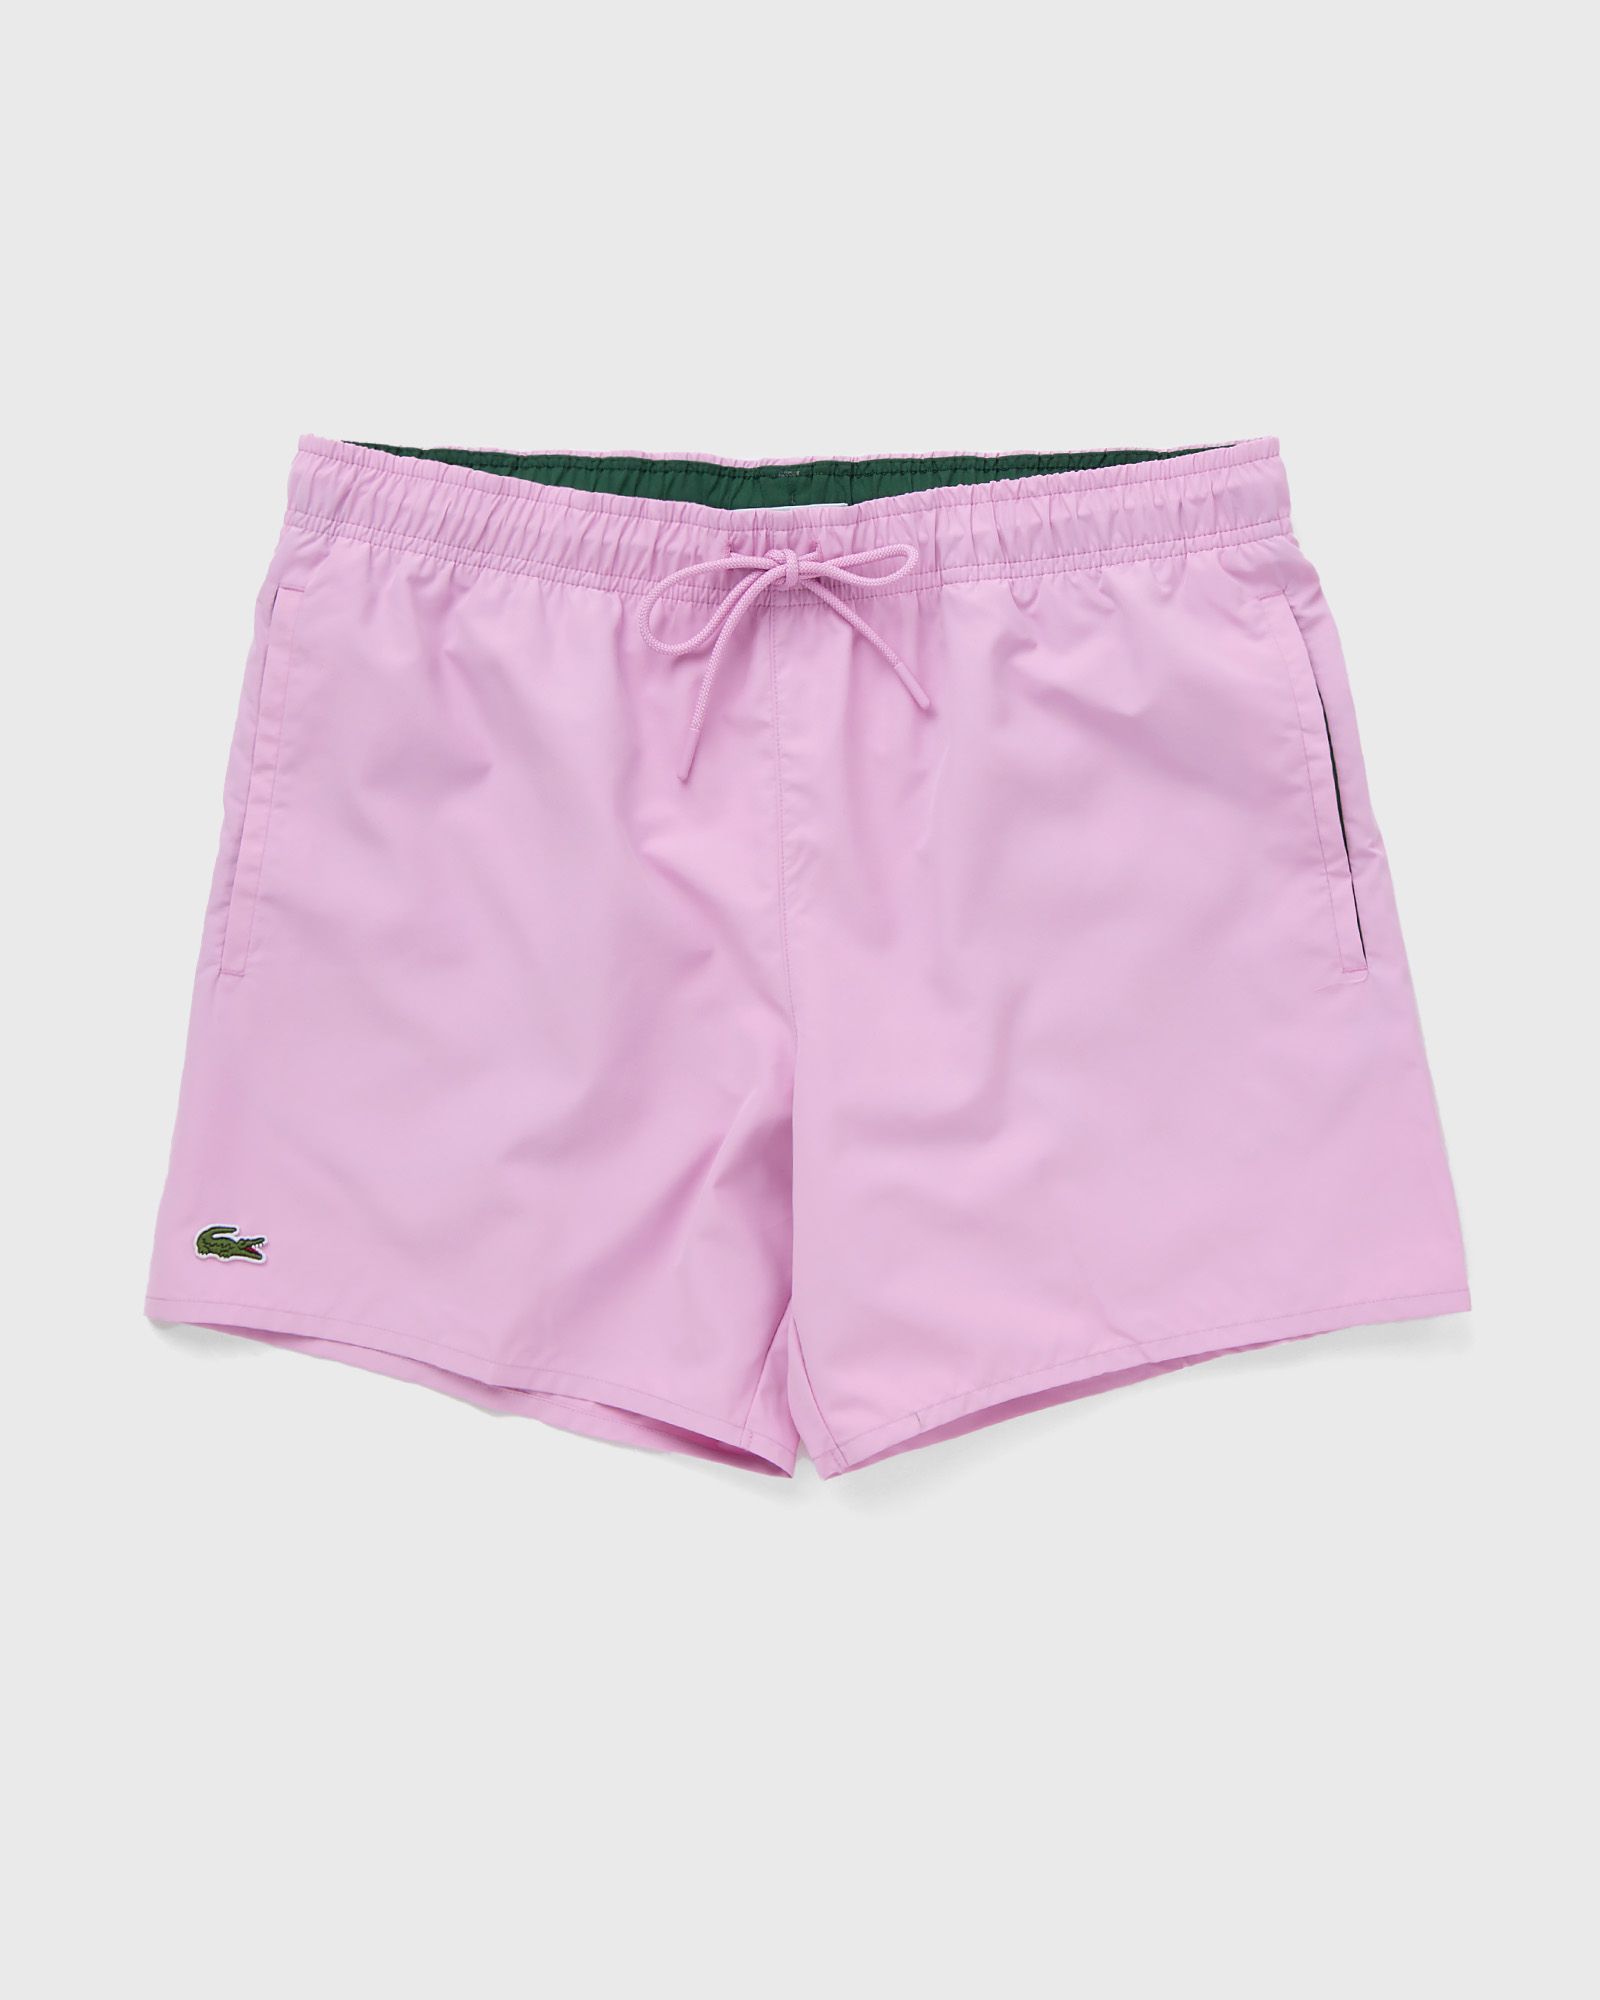 Lacoste - light quick-dry swim shorts men swimwear pink in größe:xl